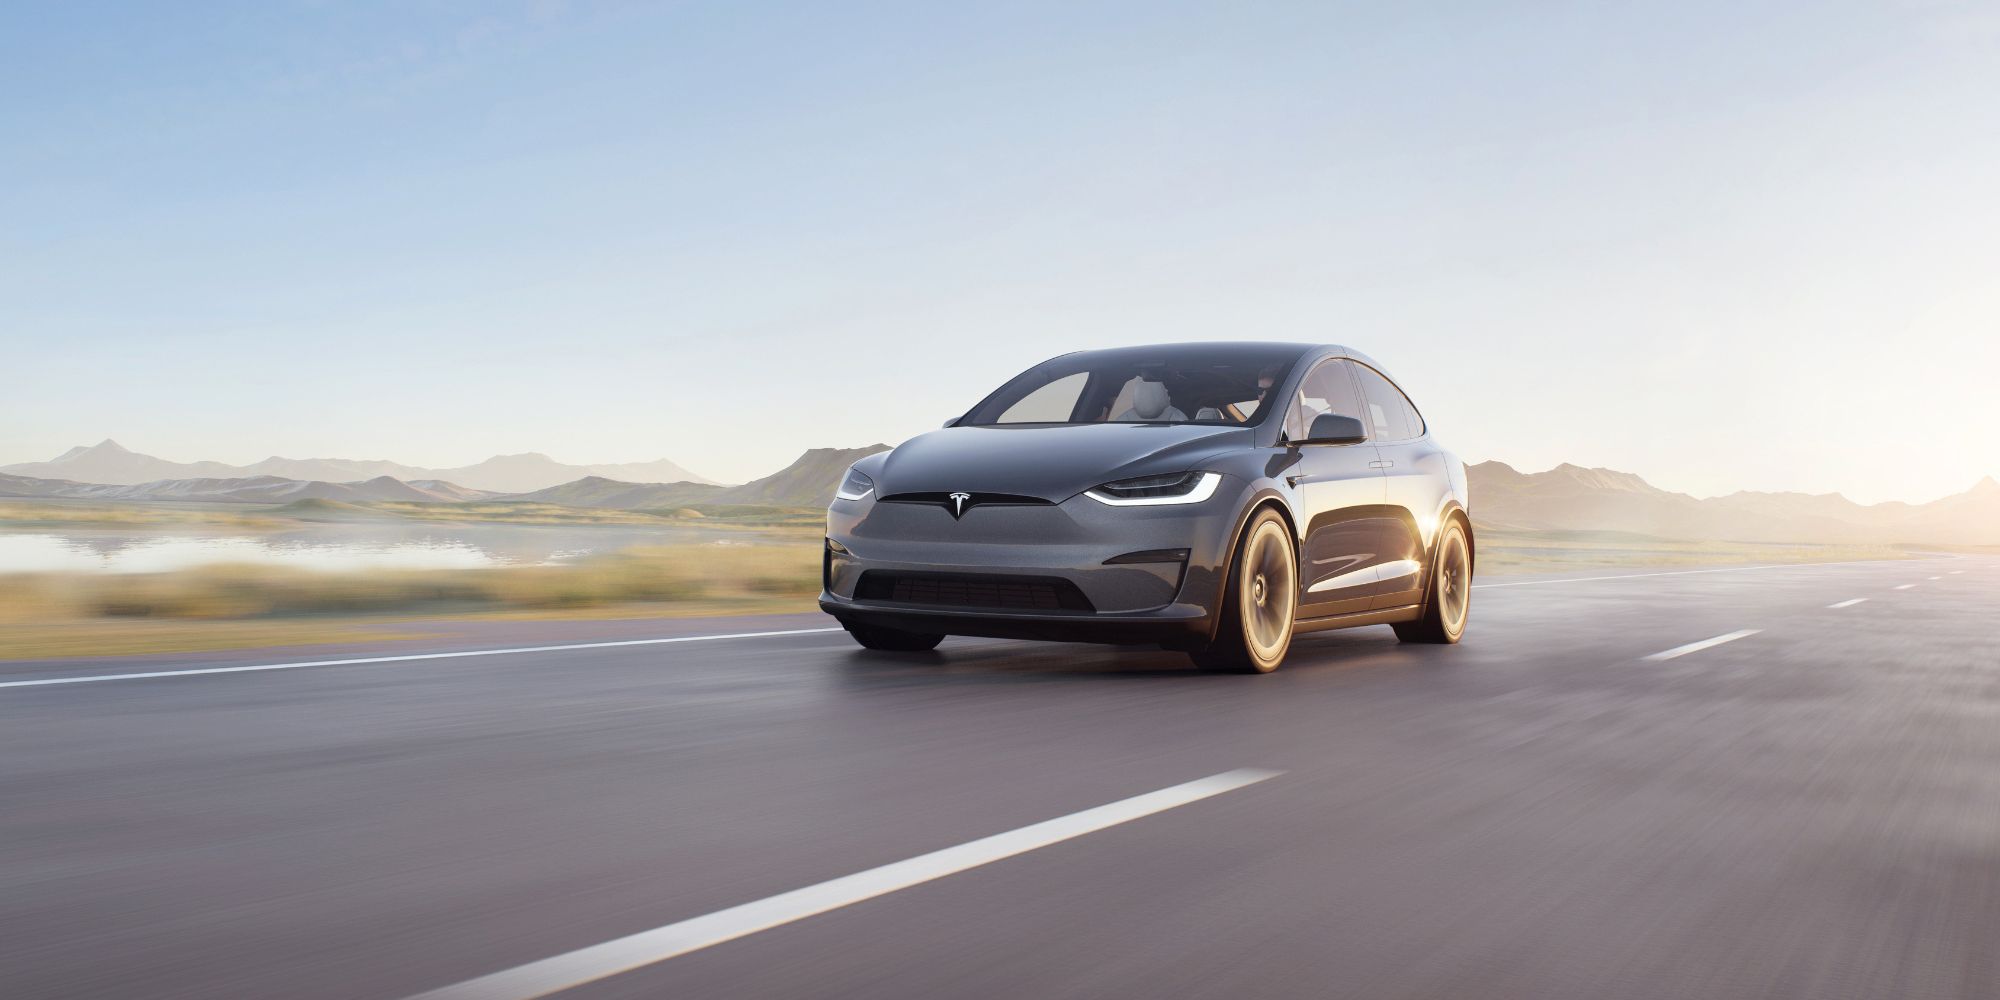 Personalización de Tesla: cómo configurar el modelo de EV adecuado para sus necesidades